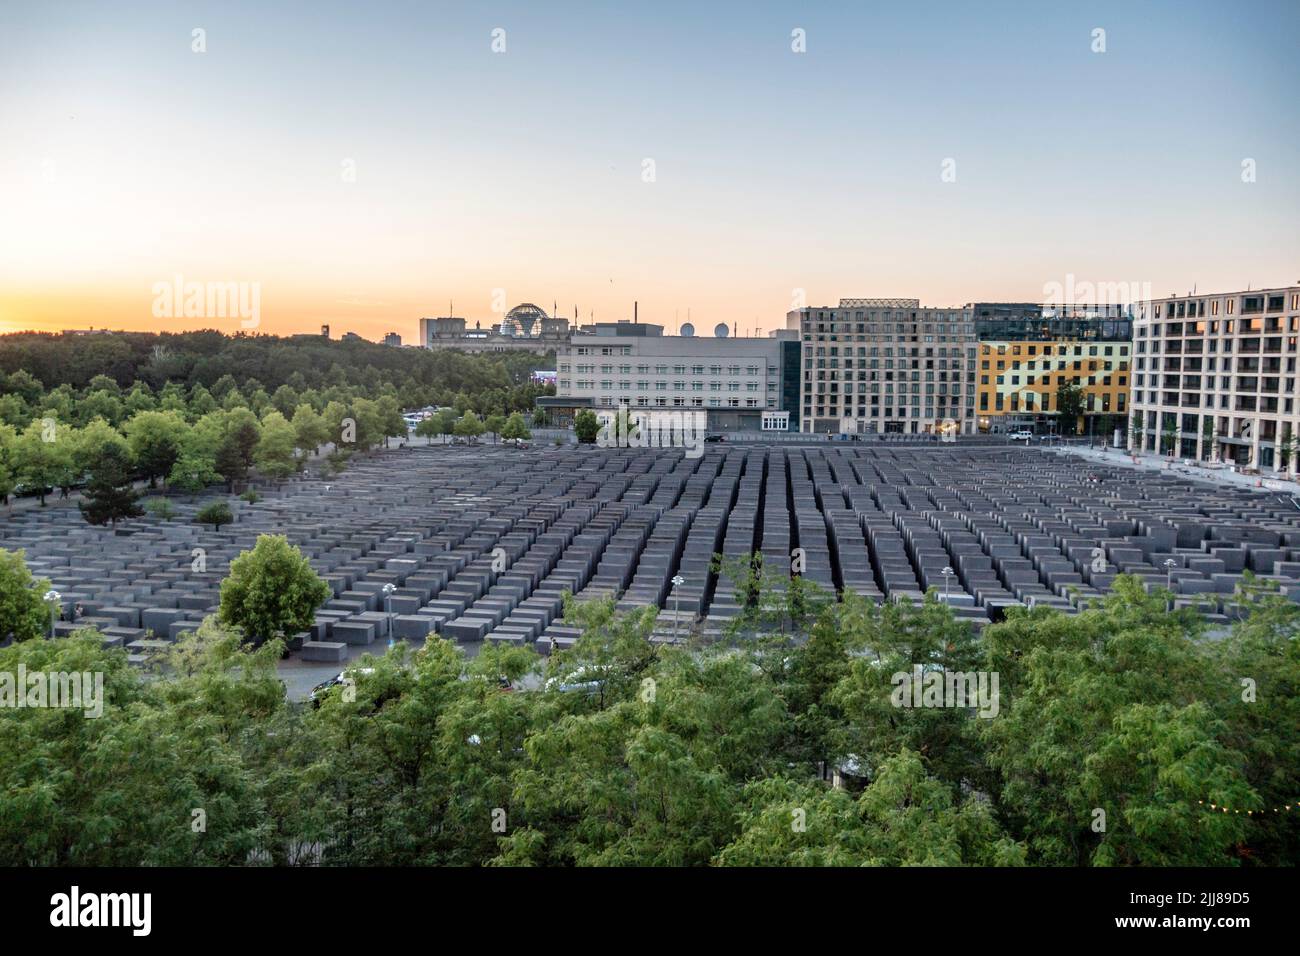 Blick von oben auf Holocaust-Denkmal, Denkmal für die ermordeten Juden Europas, Stelenfeld, Sonnenuntergang, Berlin-Mitte, Deutschland Foto Stock